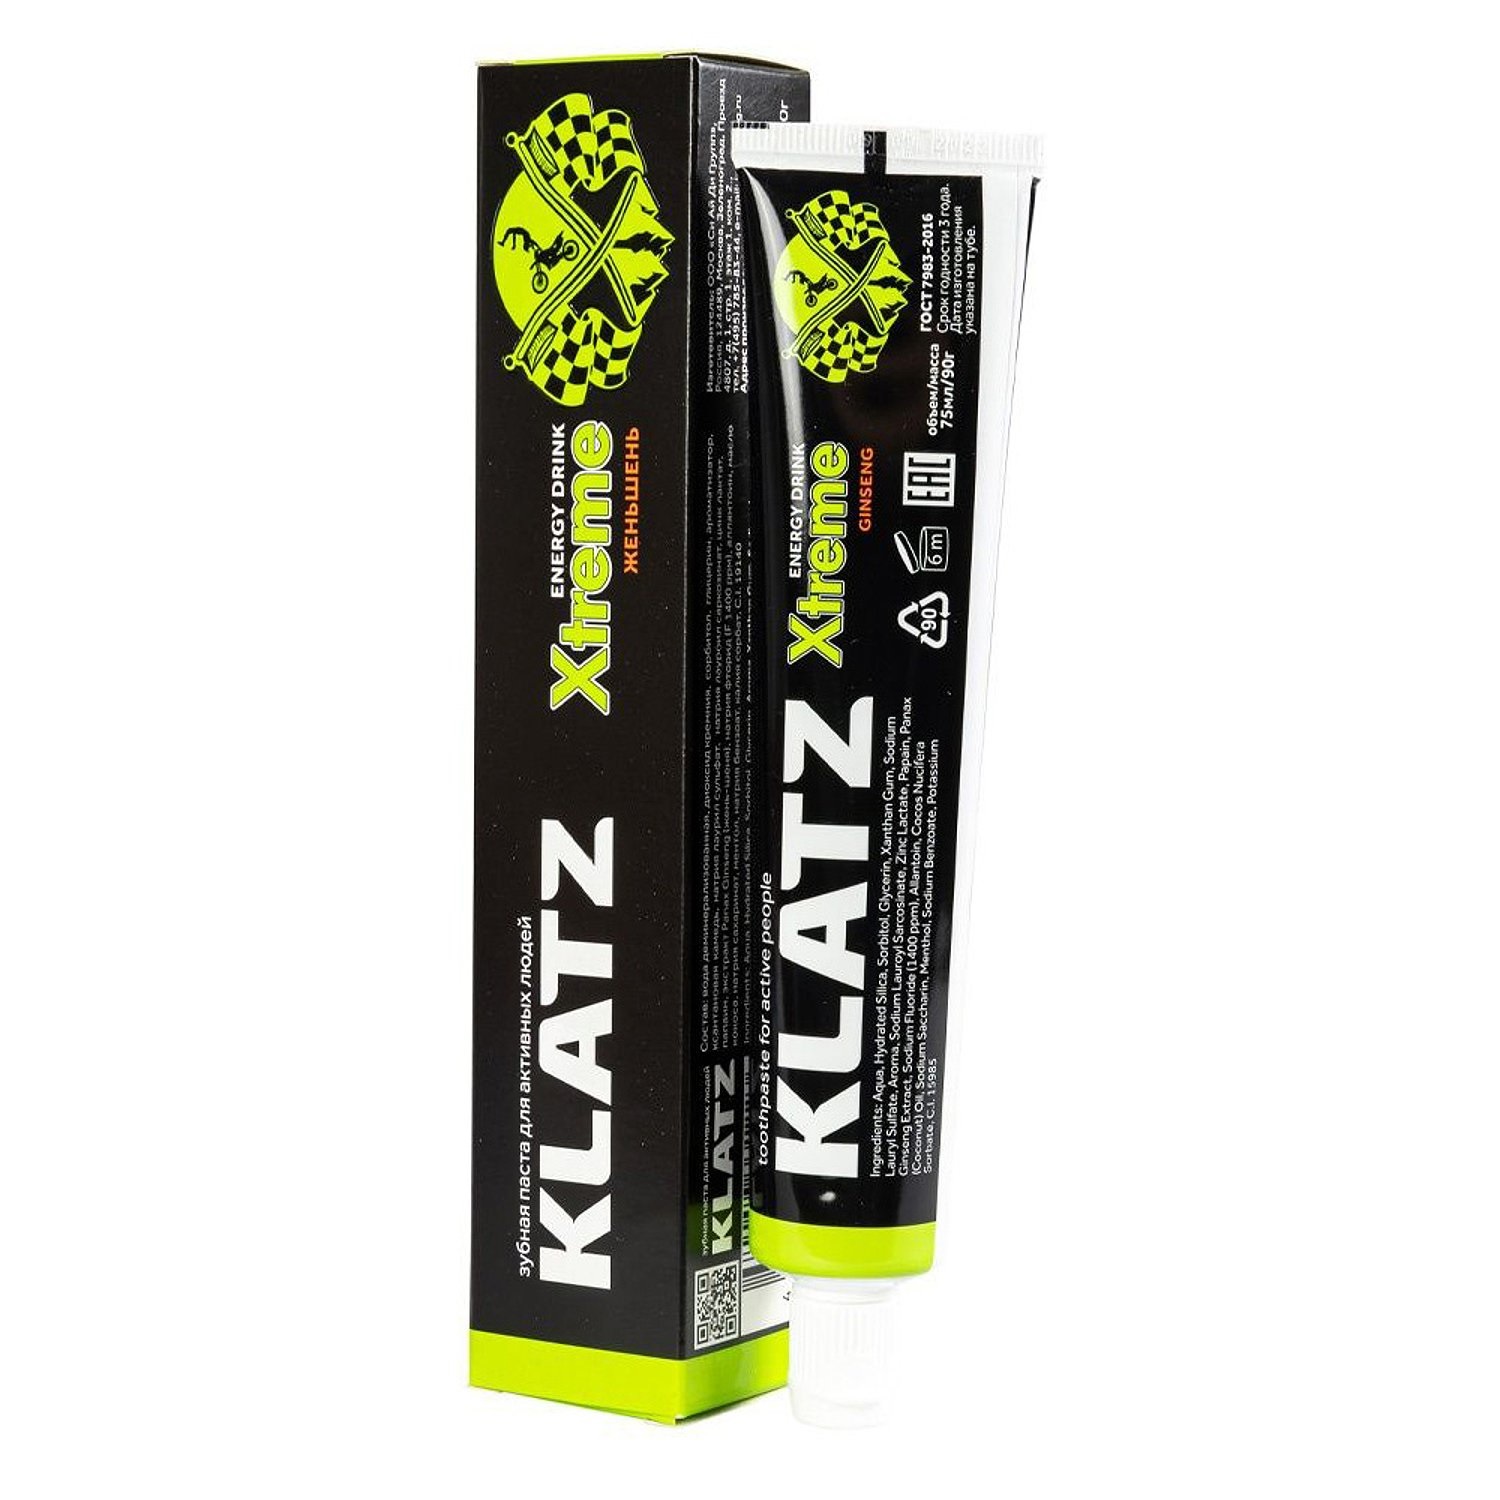 Зубная паста KLATZ X-treme Energy Drink для активных людей, женьшень, 75 мл klatz зубная паста для активных людей женьшень 75 мл